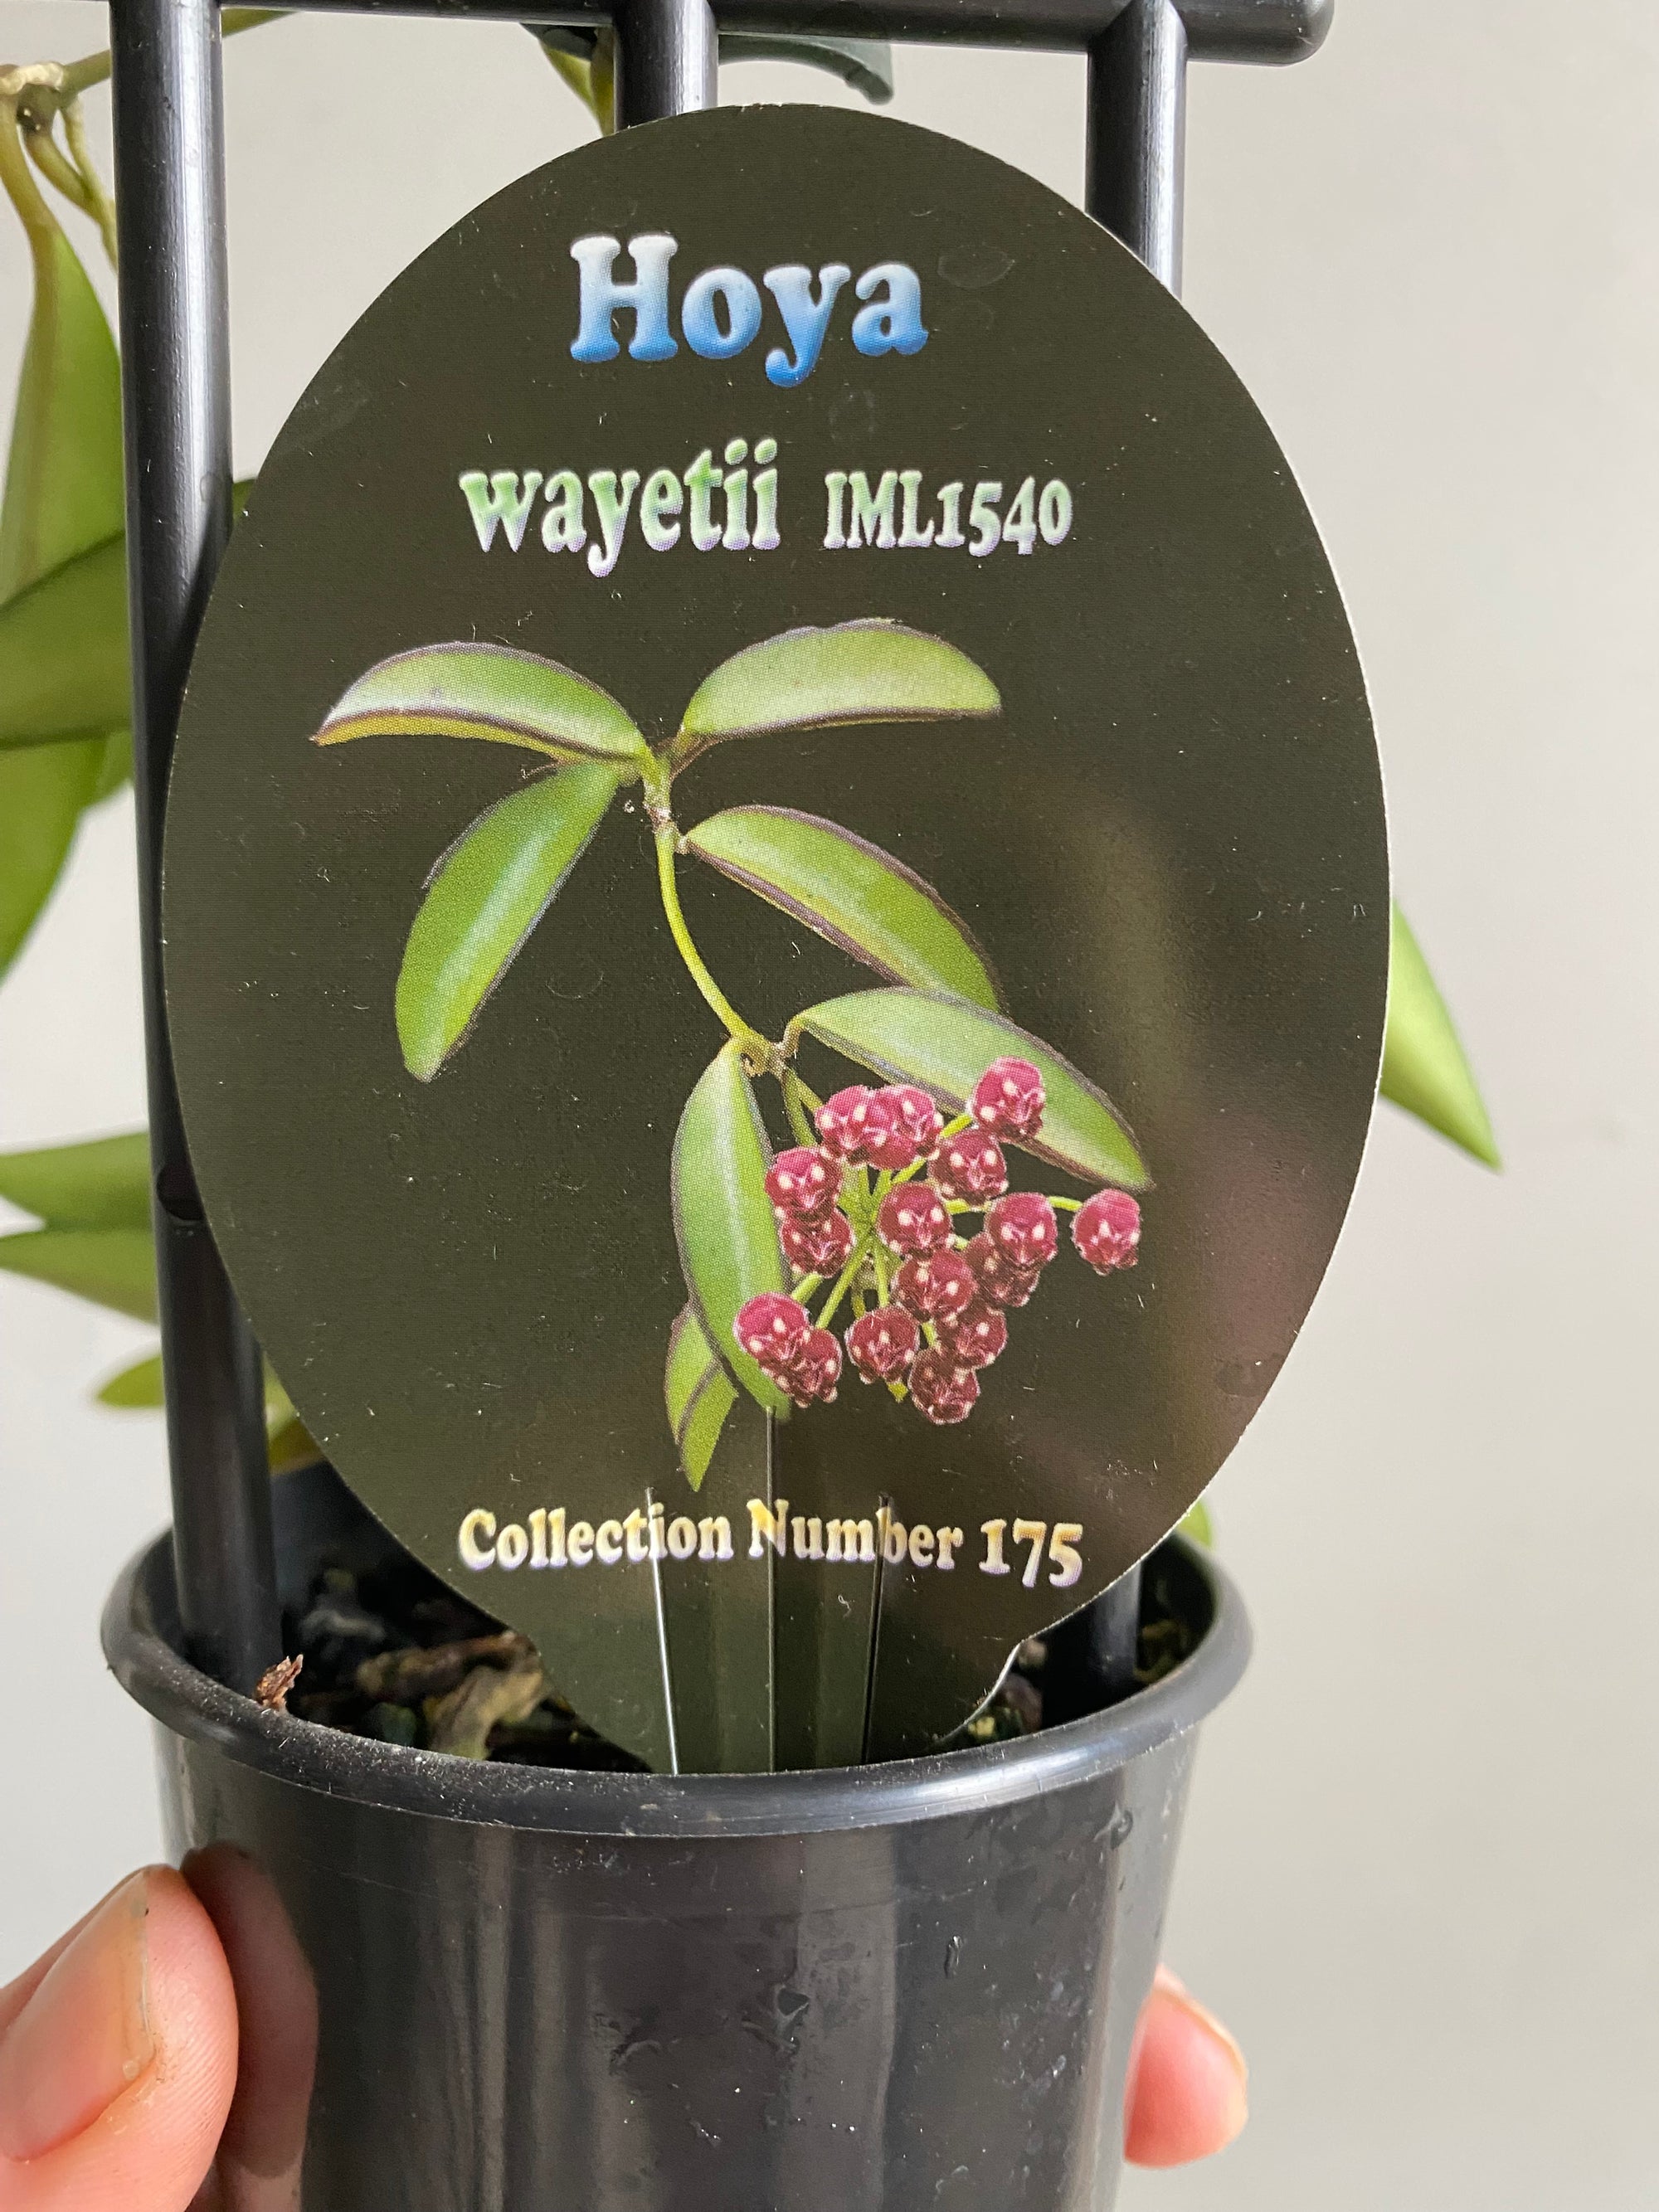 Hoya - wayetii IML1540 Collection No. 175